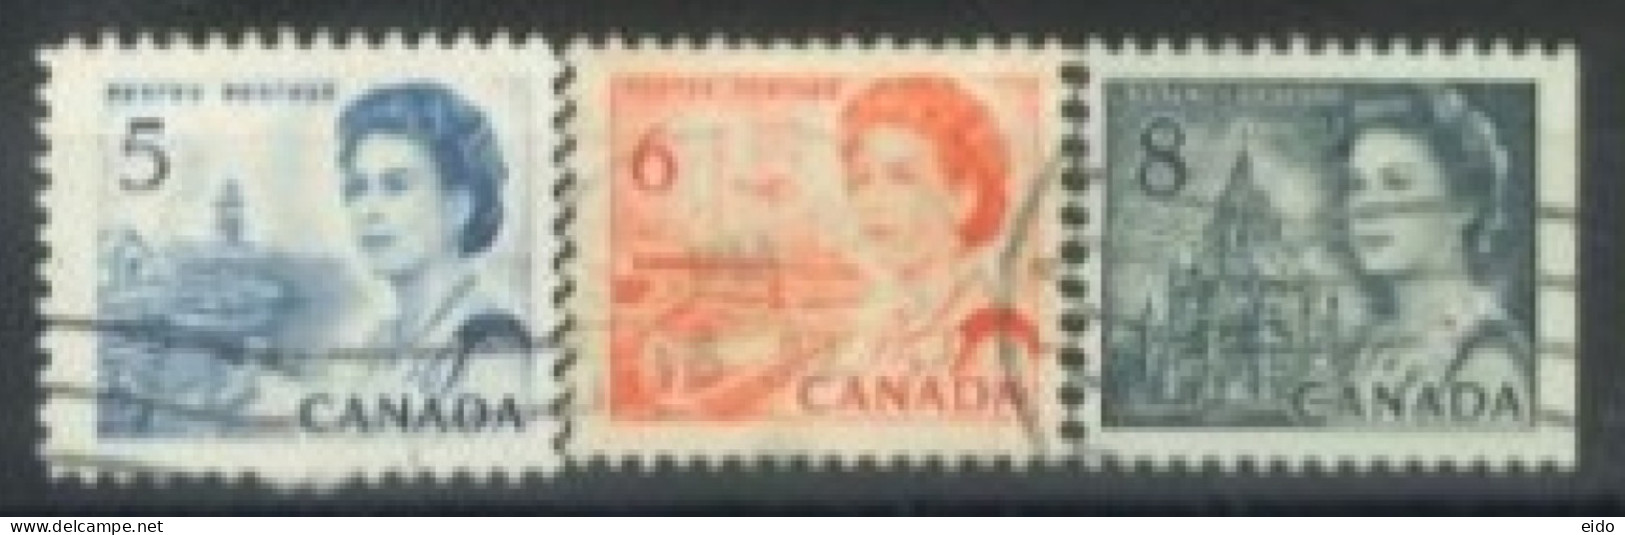 CANADA - 1967, QUEEN ELIZABETH II NORTHERN LIGHTS & DOG TEAM STAMPS SET OF 3, USED. - Gebruikt